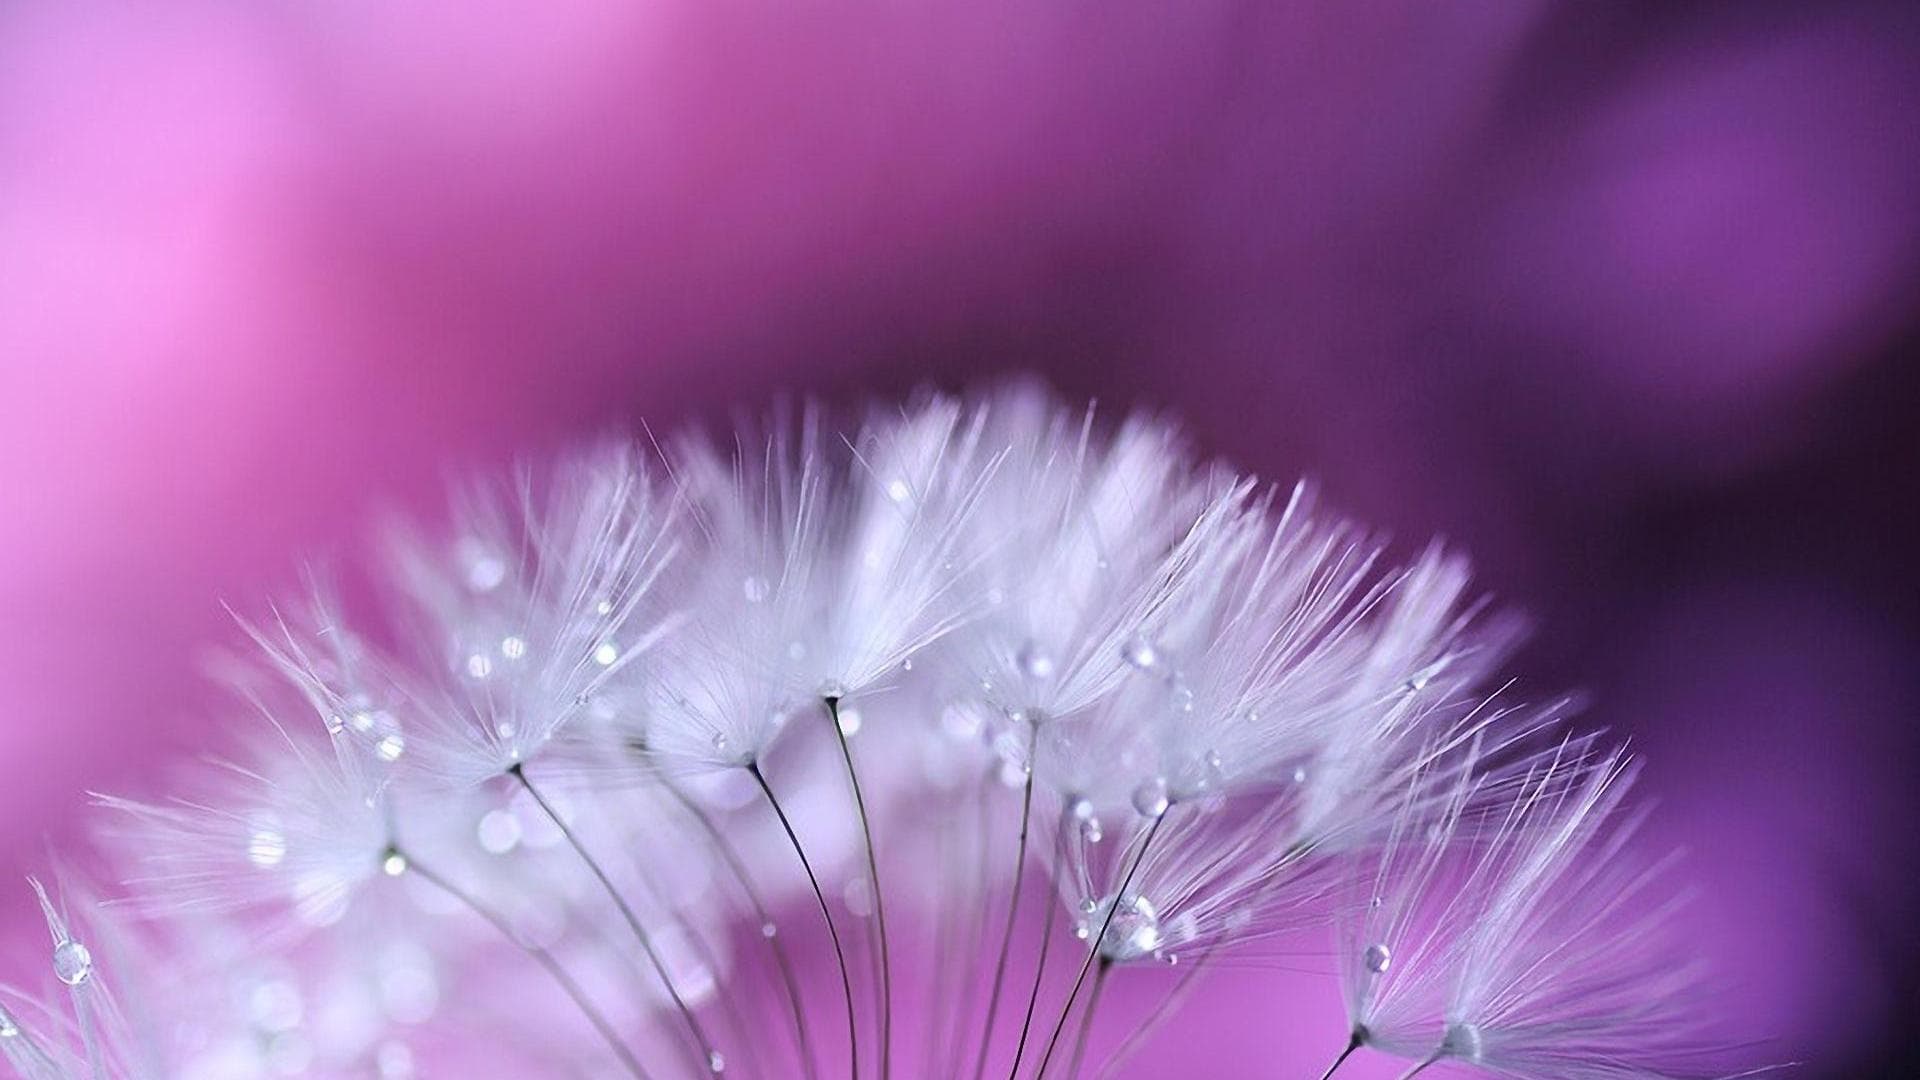 Hình ảnh hoa Cẩm Chướng đẹp nhất